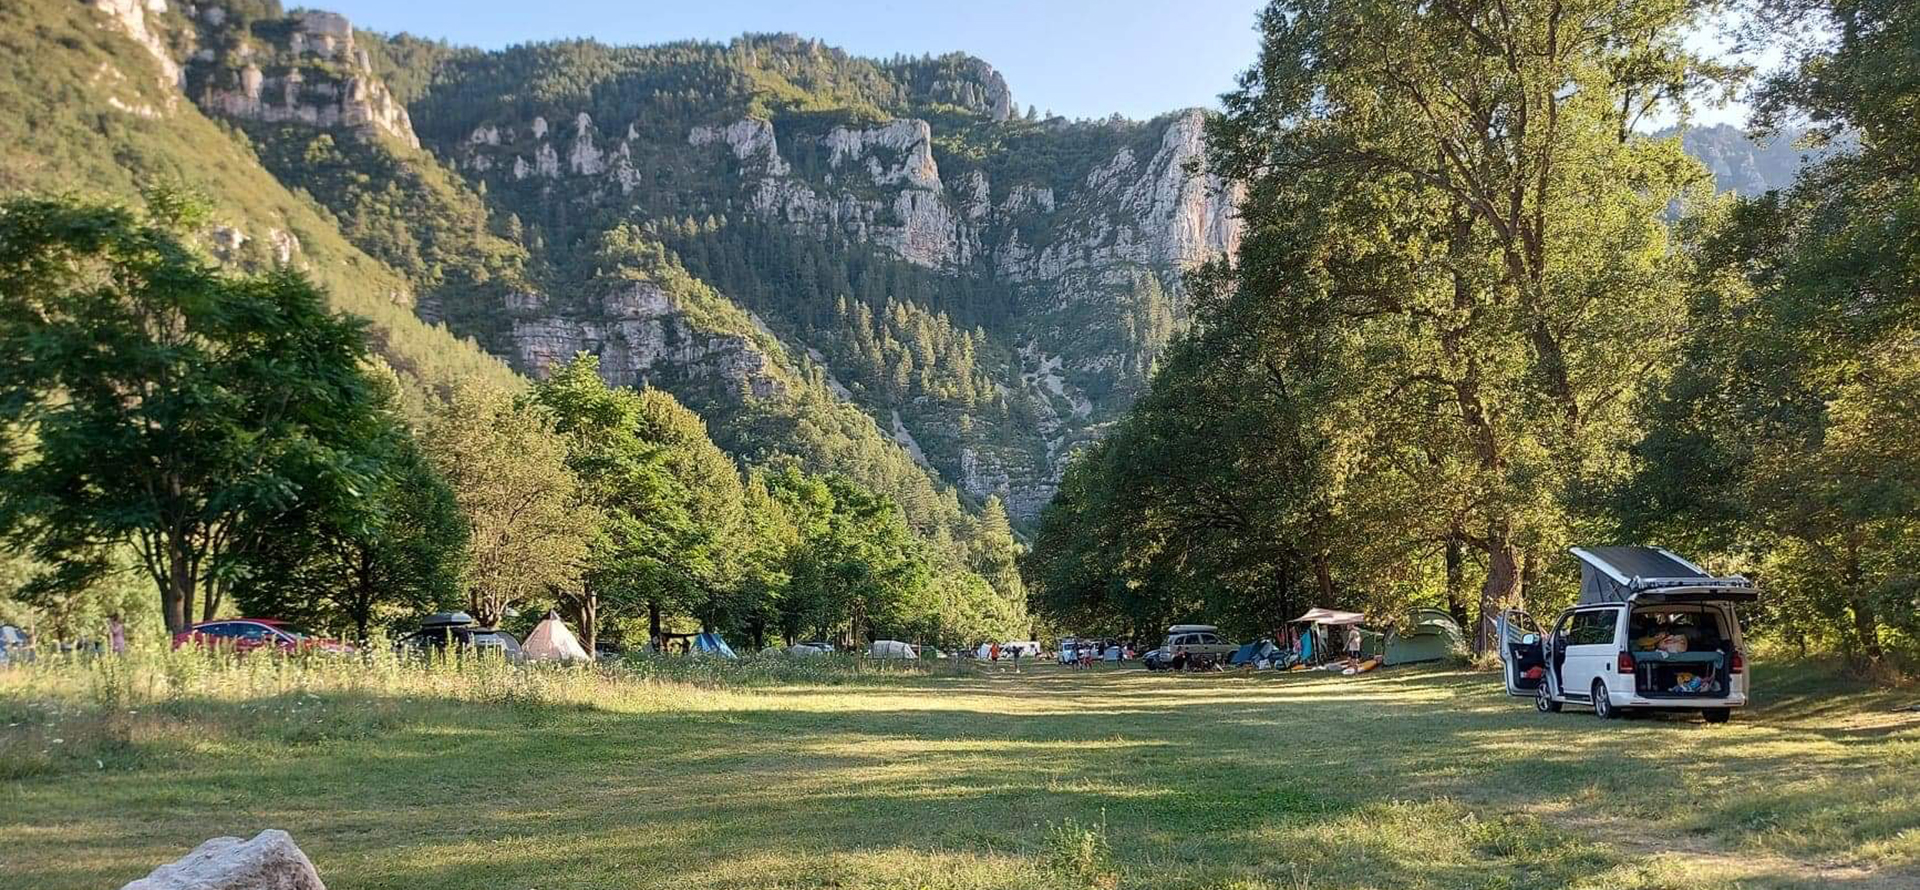 Location vacances Gorges du Tarn : camping Lozère de Charbonnières